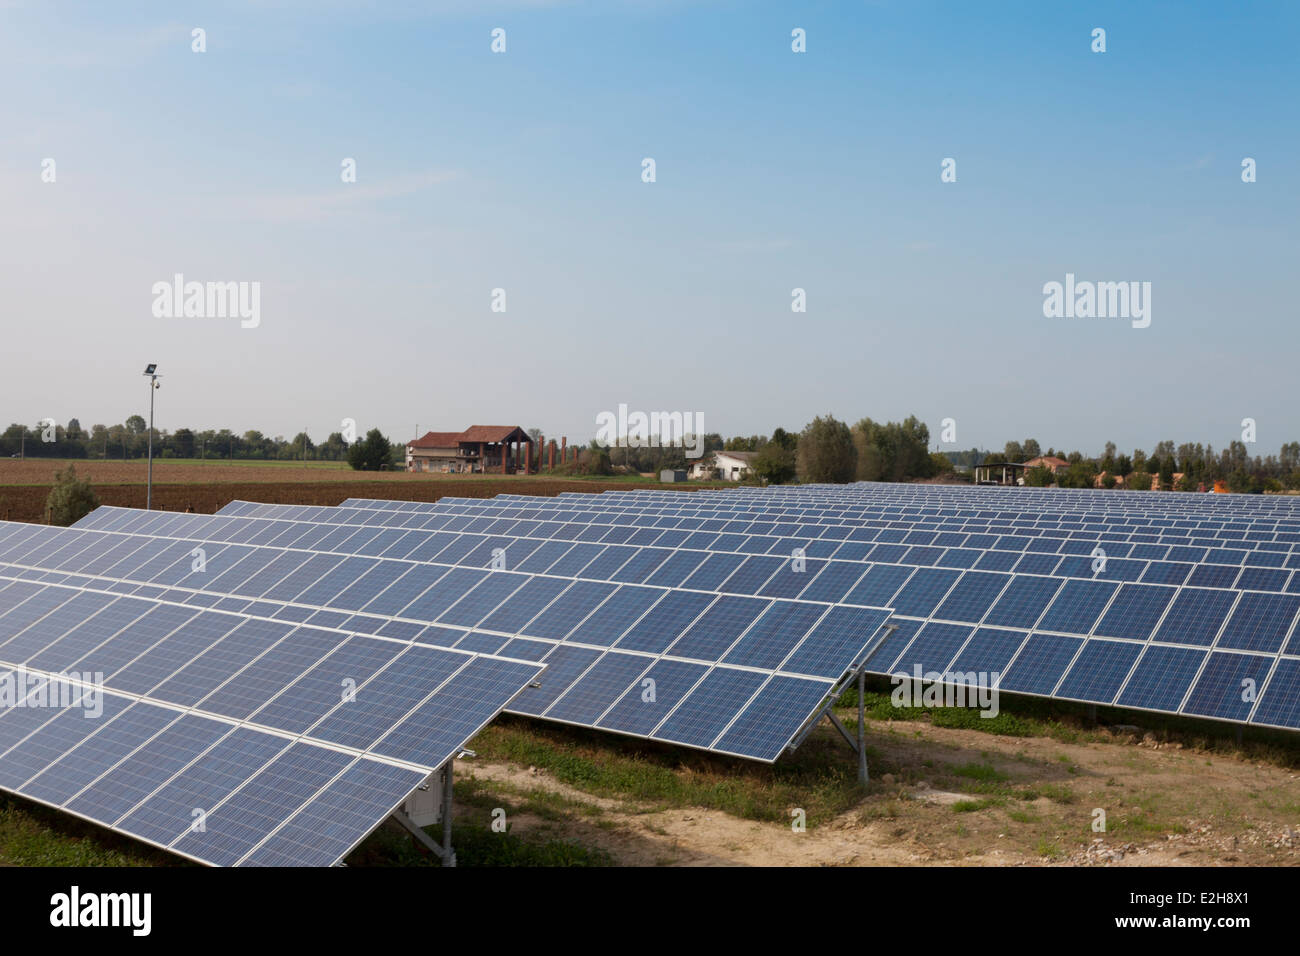 Estación de energía solar fotovoltaica Foto de stock